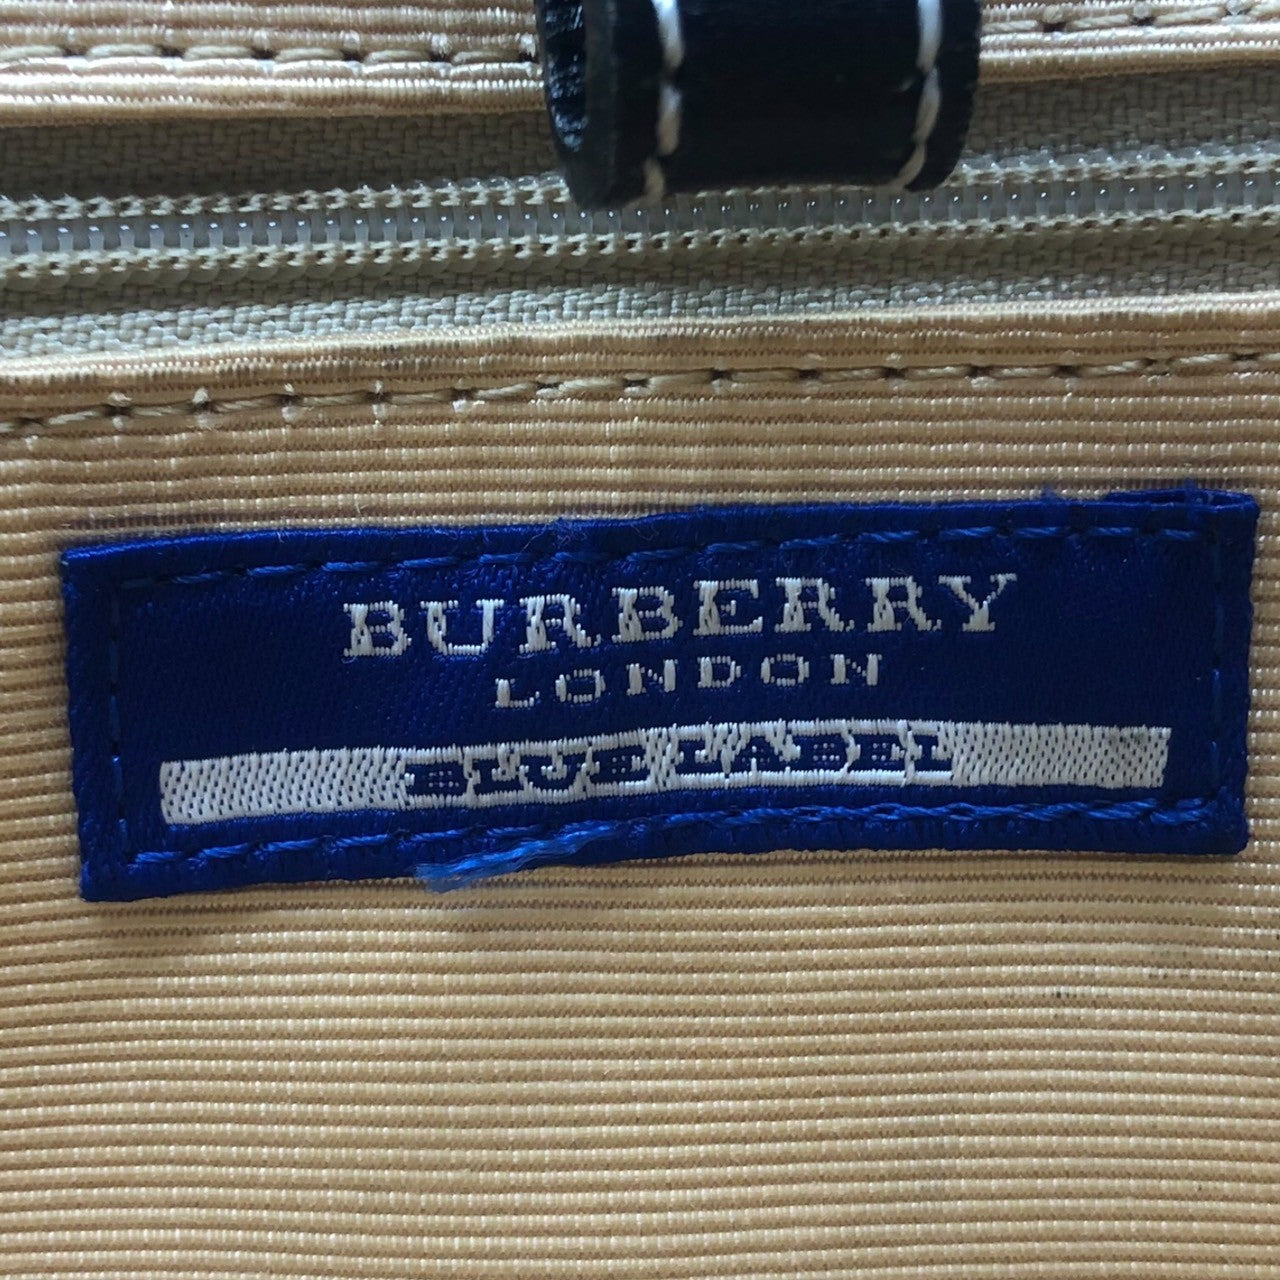 BURBERRY BLUE LABEL(バーバリーブルーレーベル) サイド ノバチェック キャンバス レザー ハンド バッグ ZA440-635-09 ネイビー×ブラック×ベージュ トート 鞄